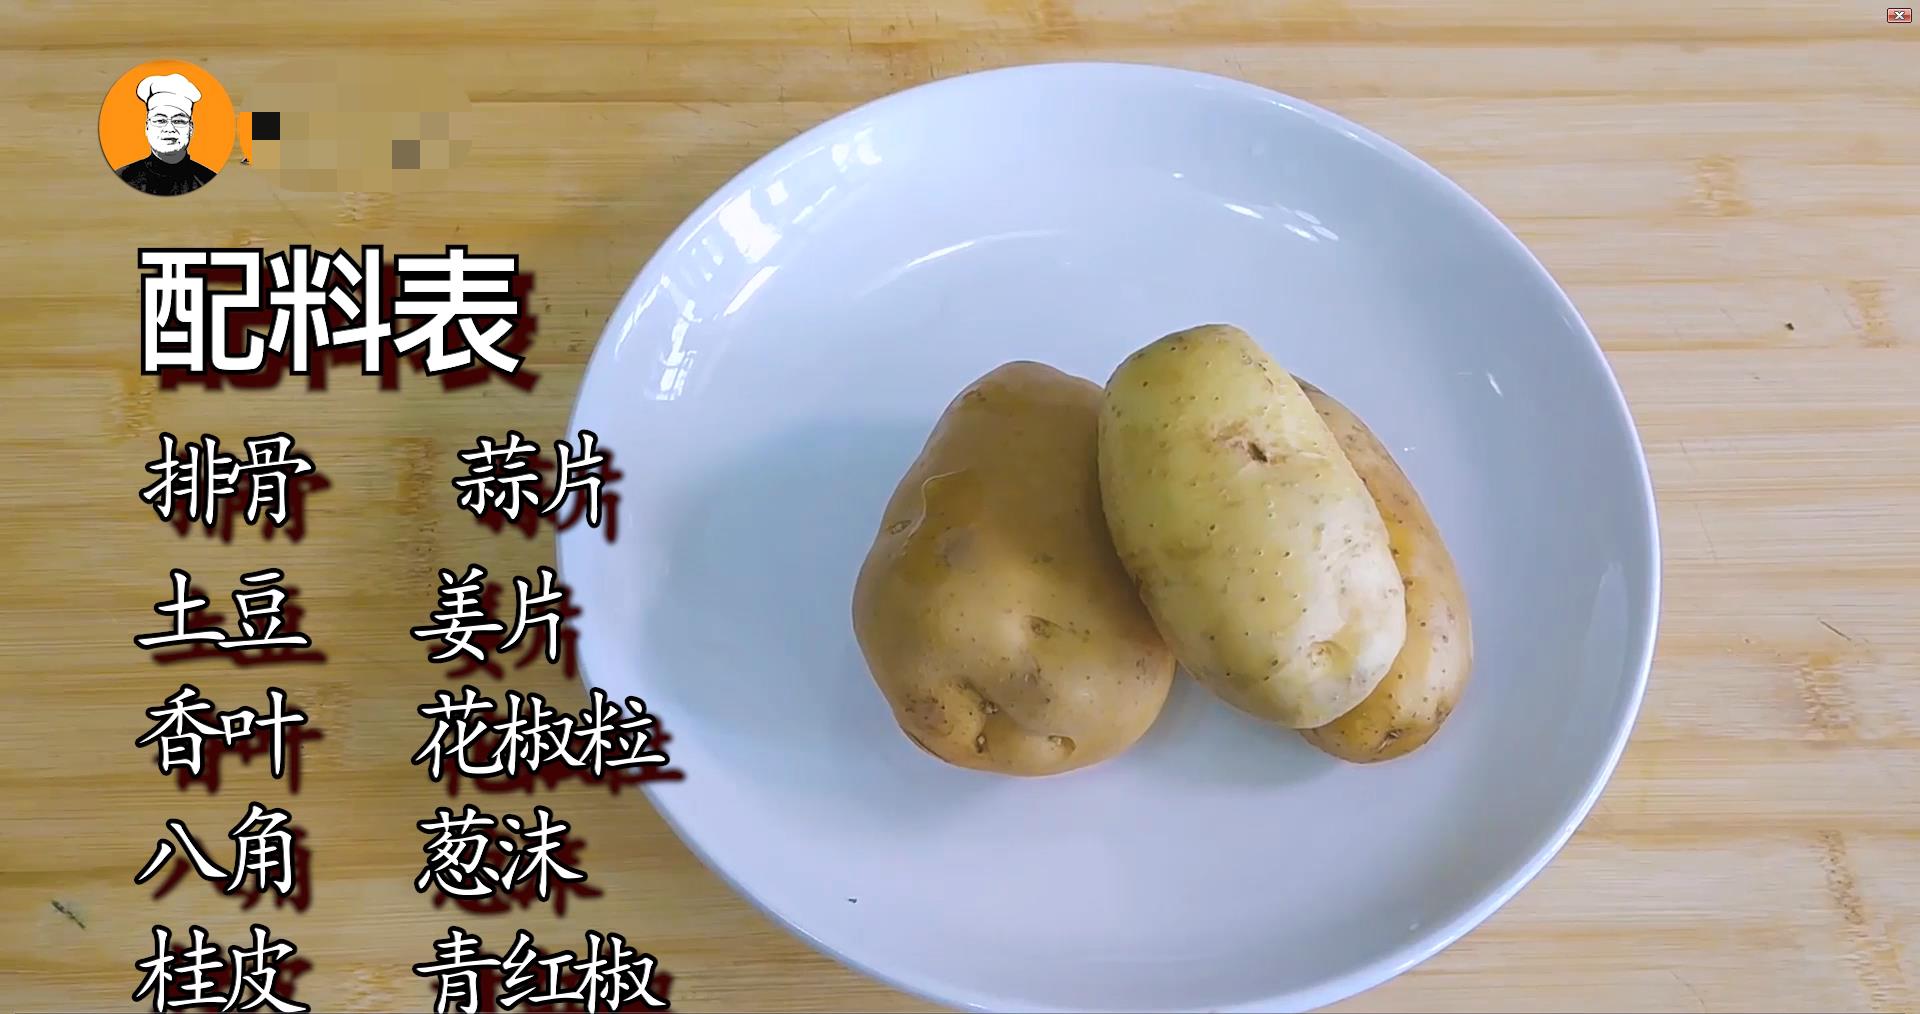 土豆排骨的做法土豆炖排骨的做法(土豆排骨红烧的做法)